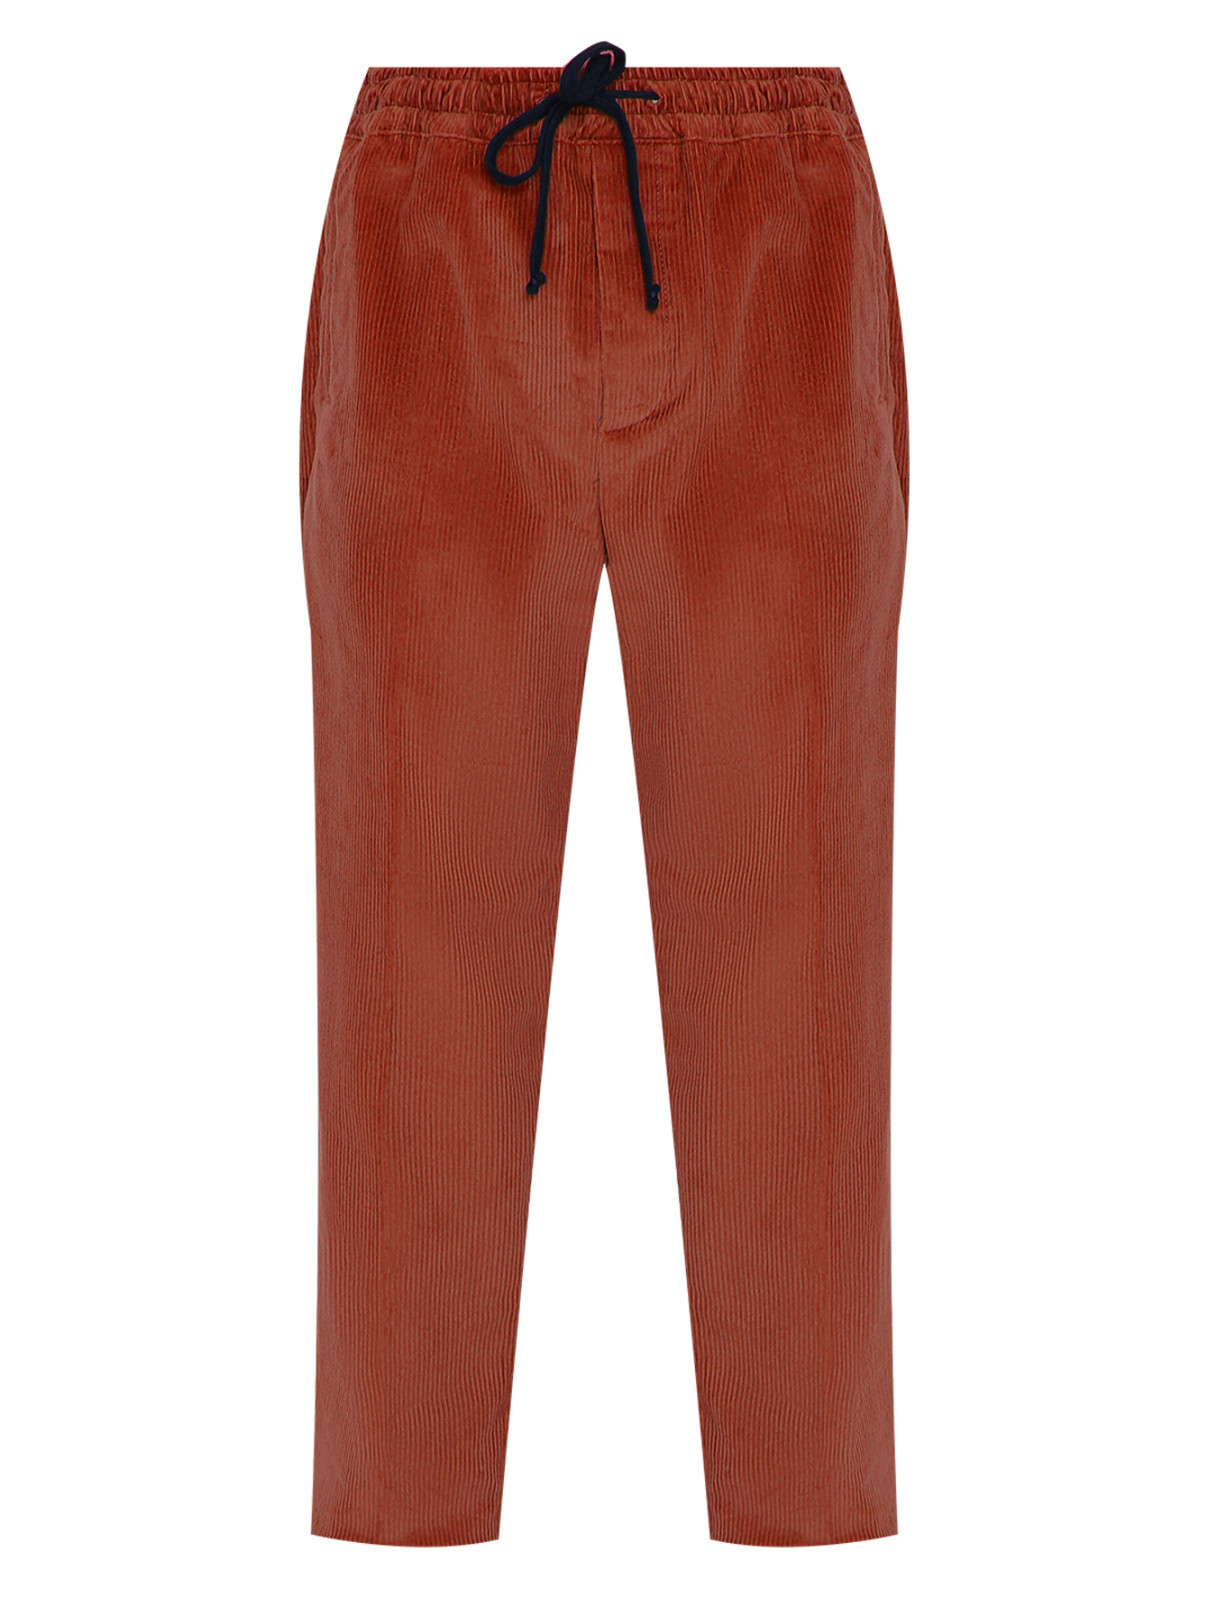 Вельветовые брюки из хлопка Altea  –  Общий вид  – Цвет:  Коричневый